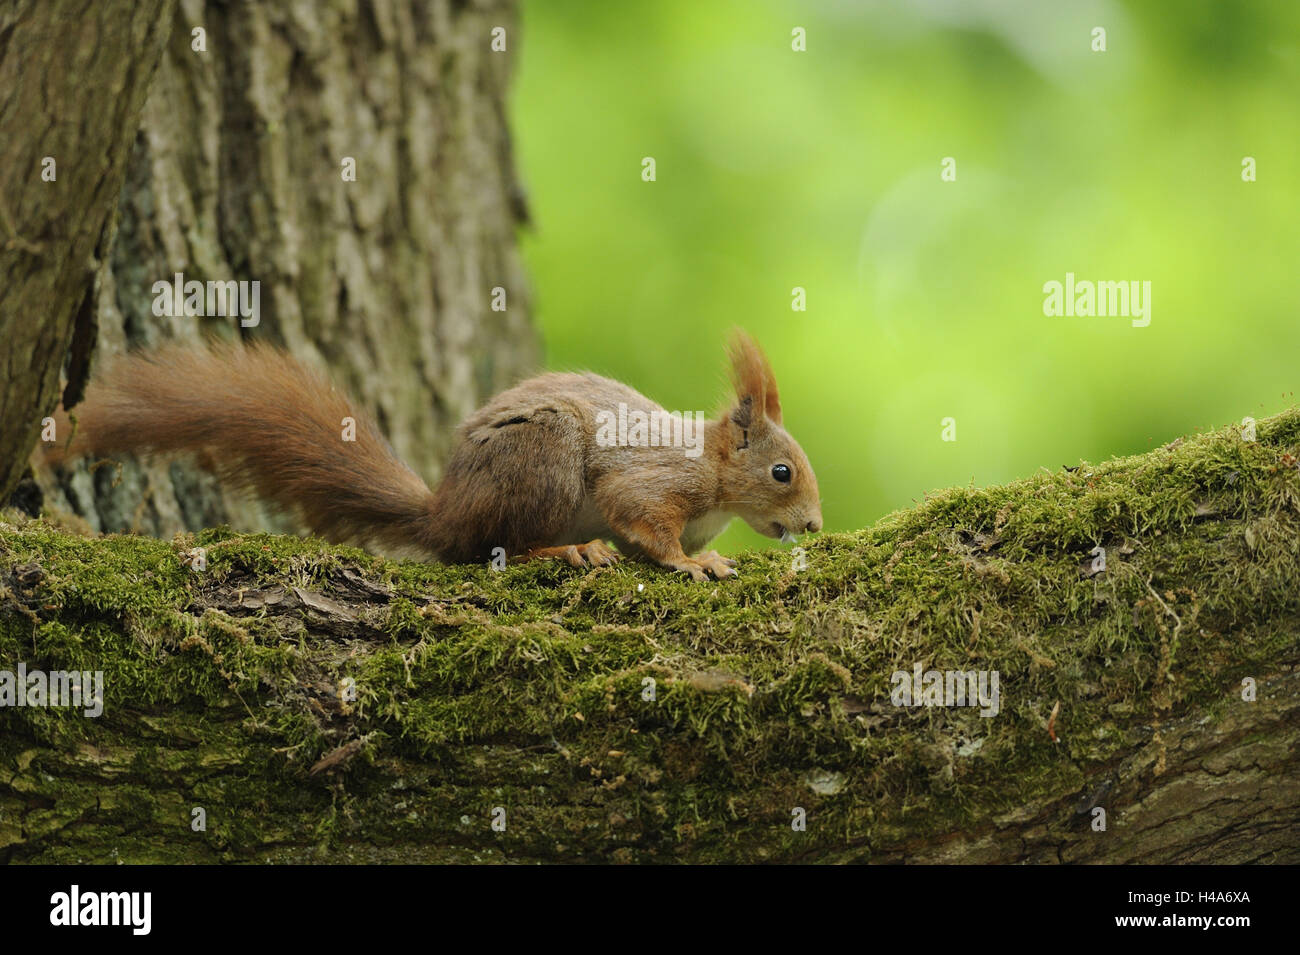 Central European squirrel, Sciurus vulgaris fuscoater, Stock Photo